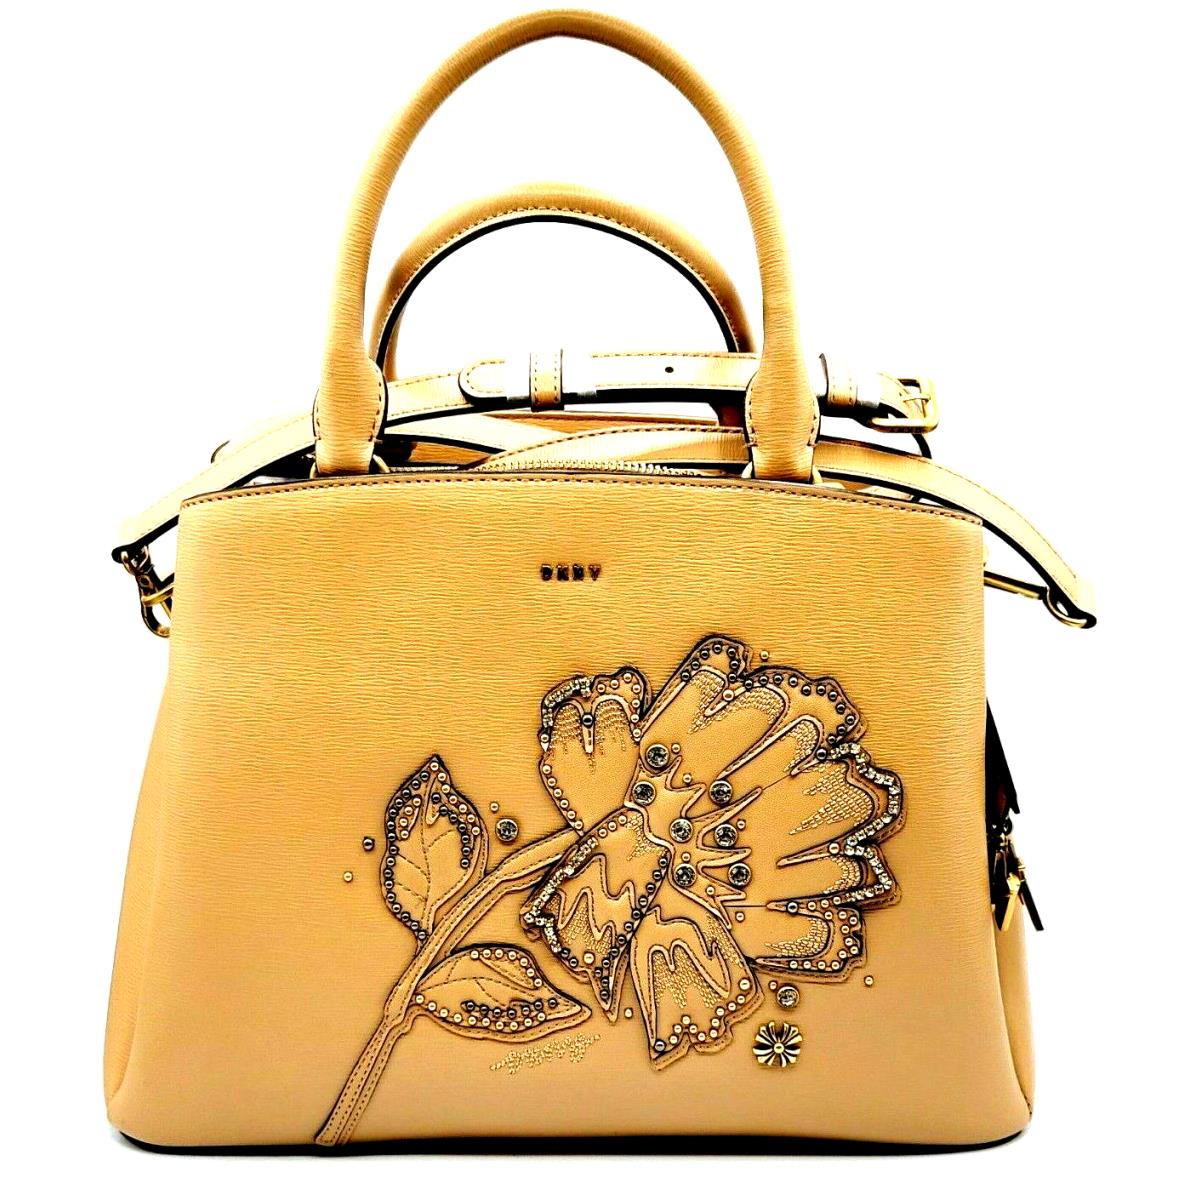 Dkny Paige Floral Leather Satchel Shoulder Women`s Bag Beige Latte Gold